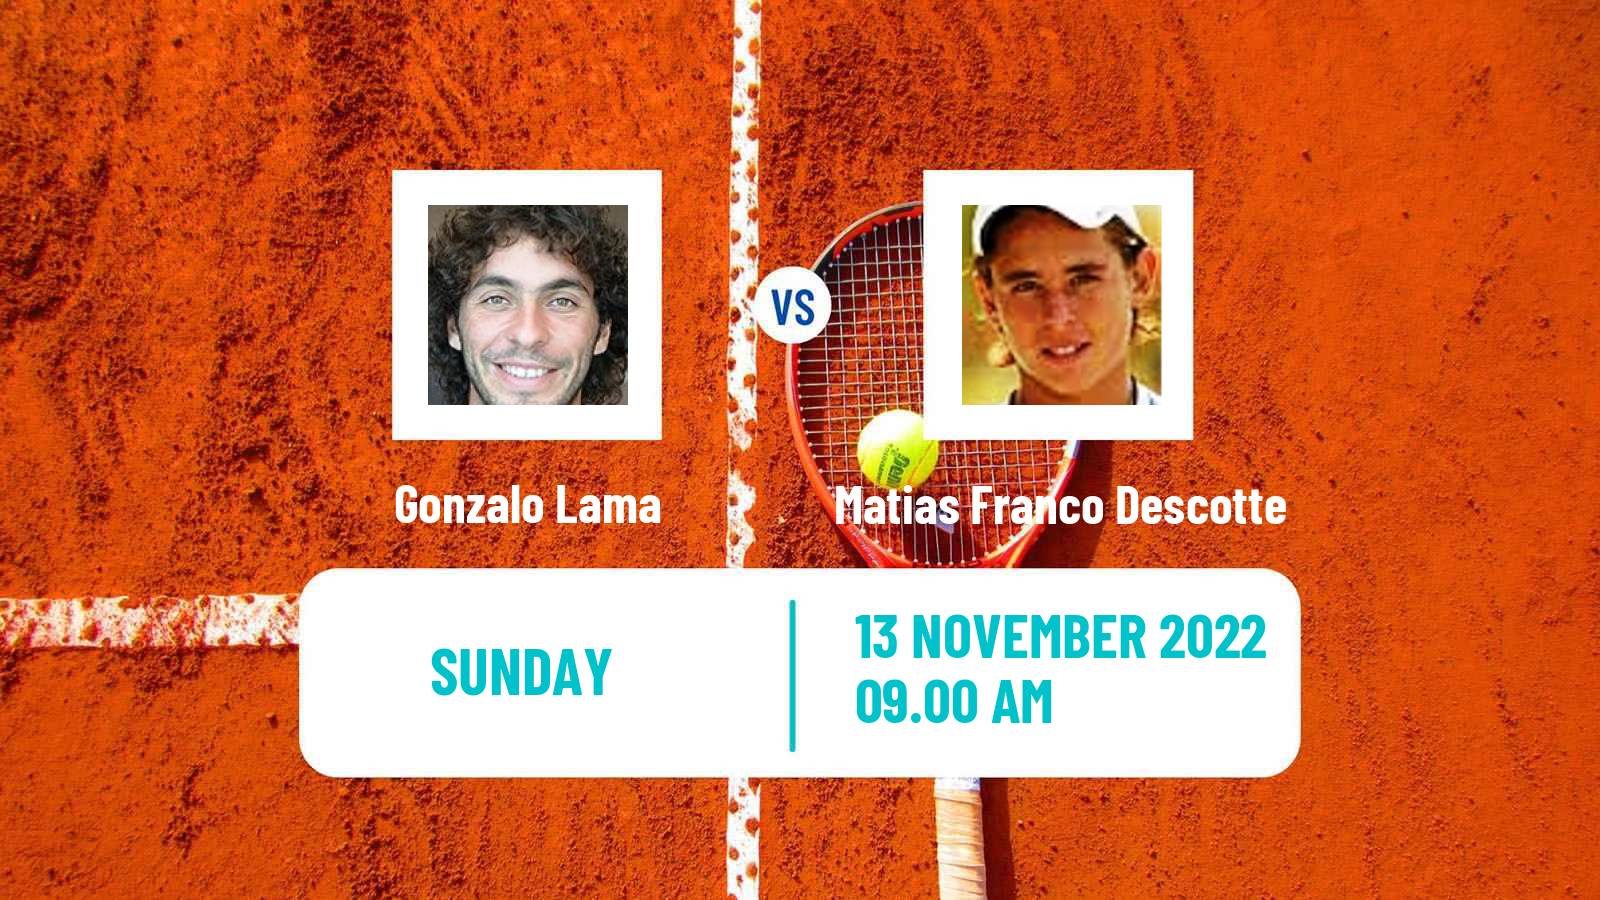 Tennis ITF Tournaments Gonzalo Lama - Matias Franco Descotte